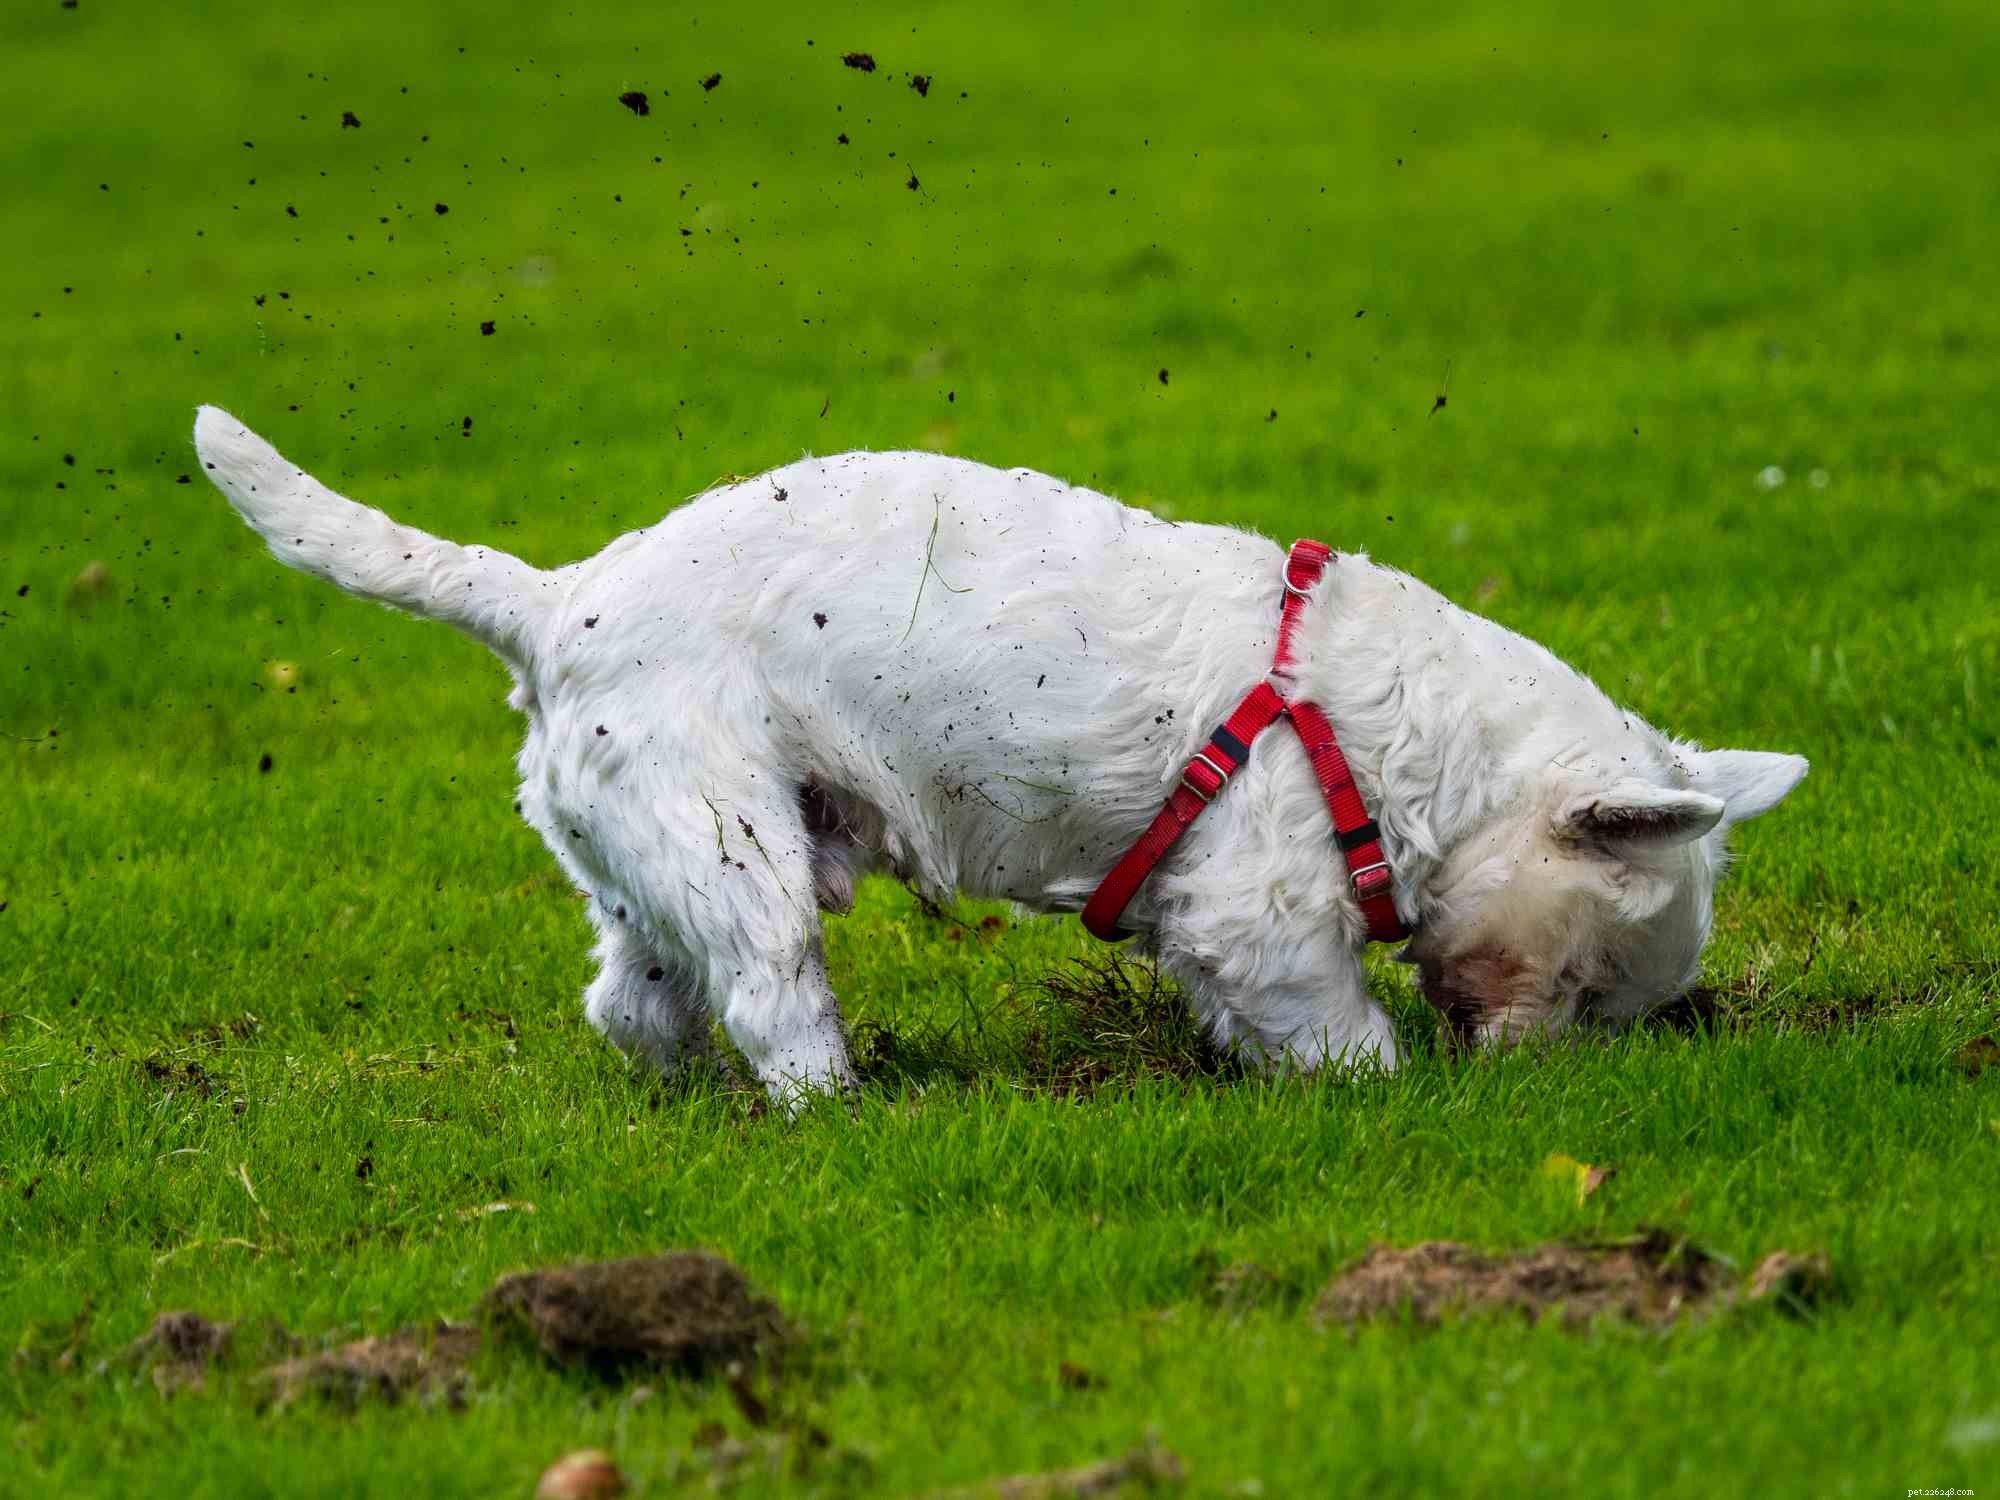 West Highland White Terrier (Westie) :caractéristiques et soins de la race de chien